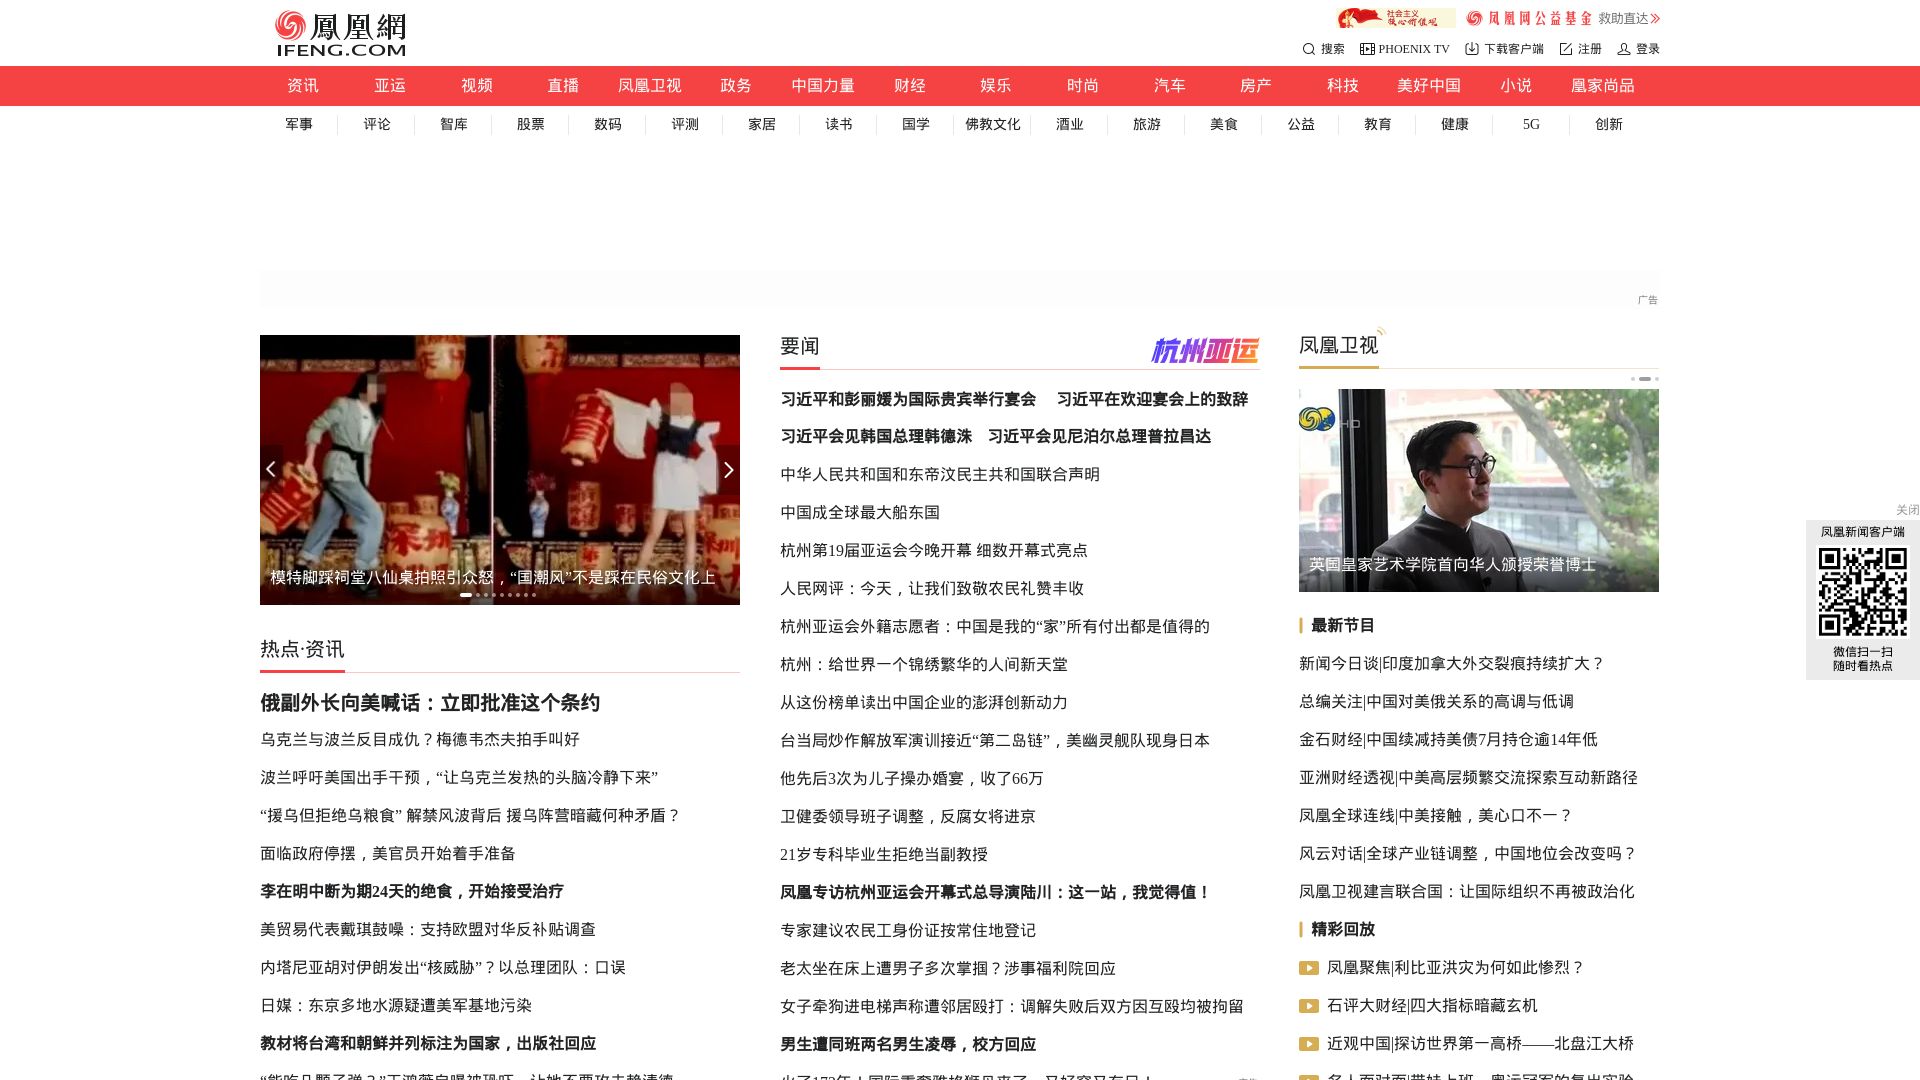 Estado web ifeng.com está   ONLINE